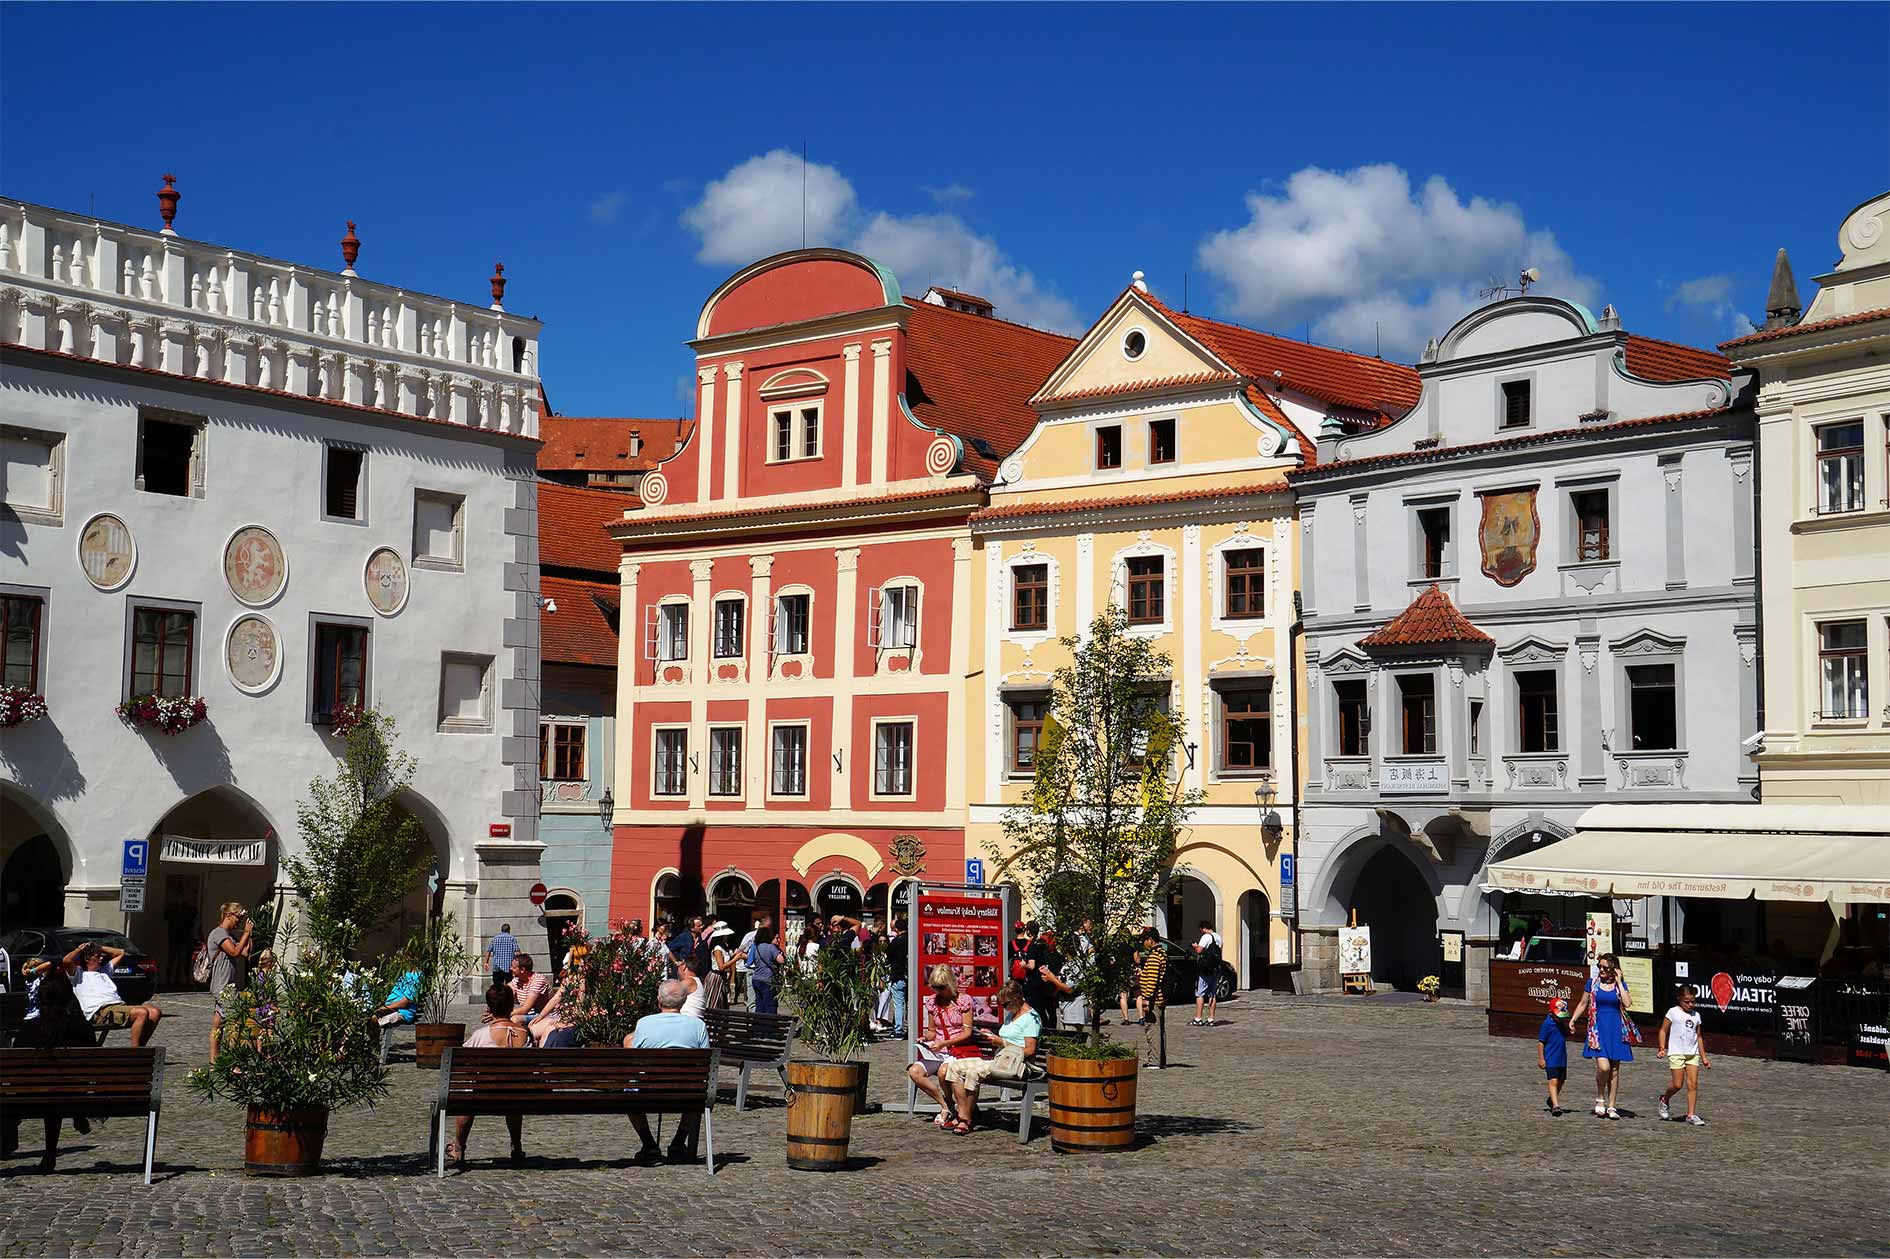 Main town square of Český Krumlov